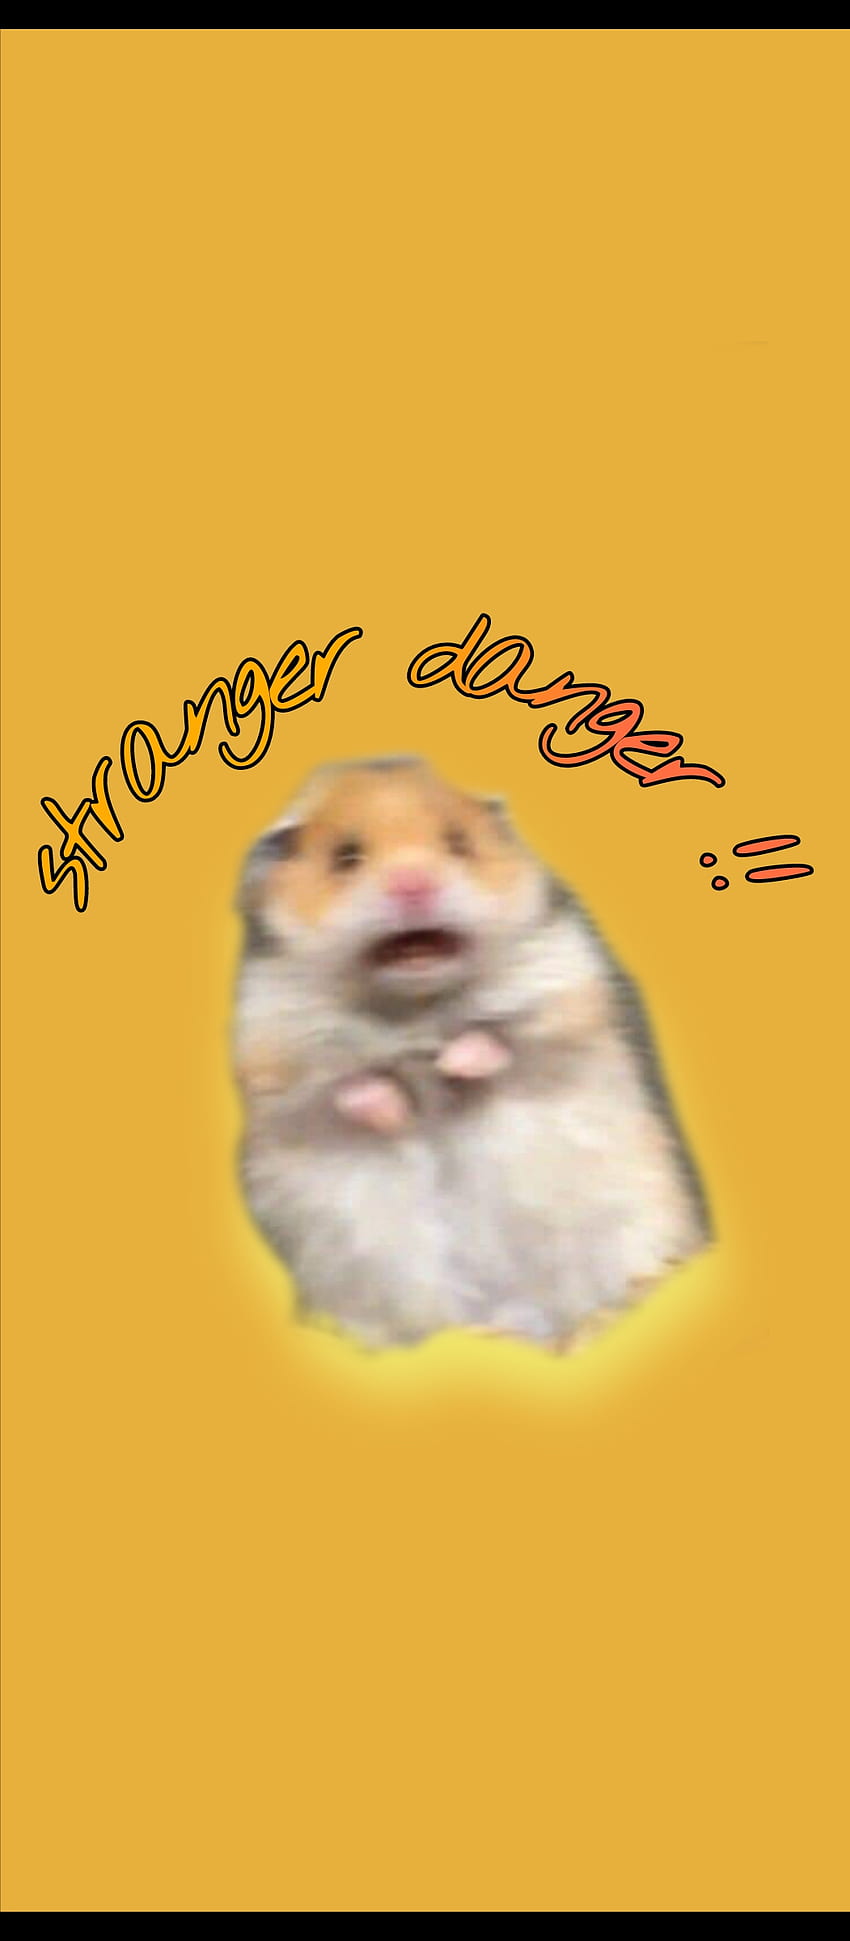 Hamster meme, funny HD phone wallpaper